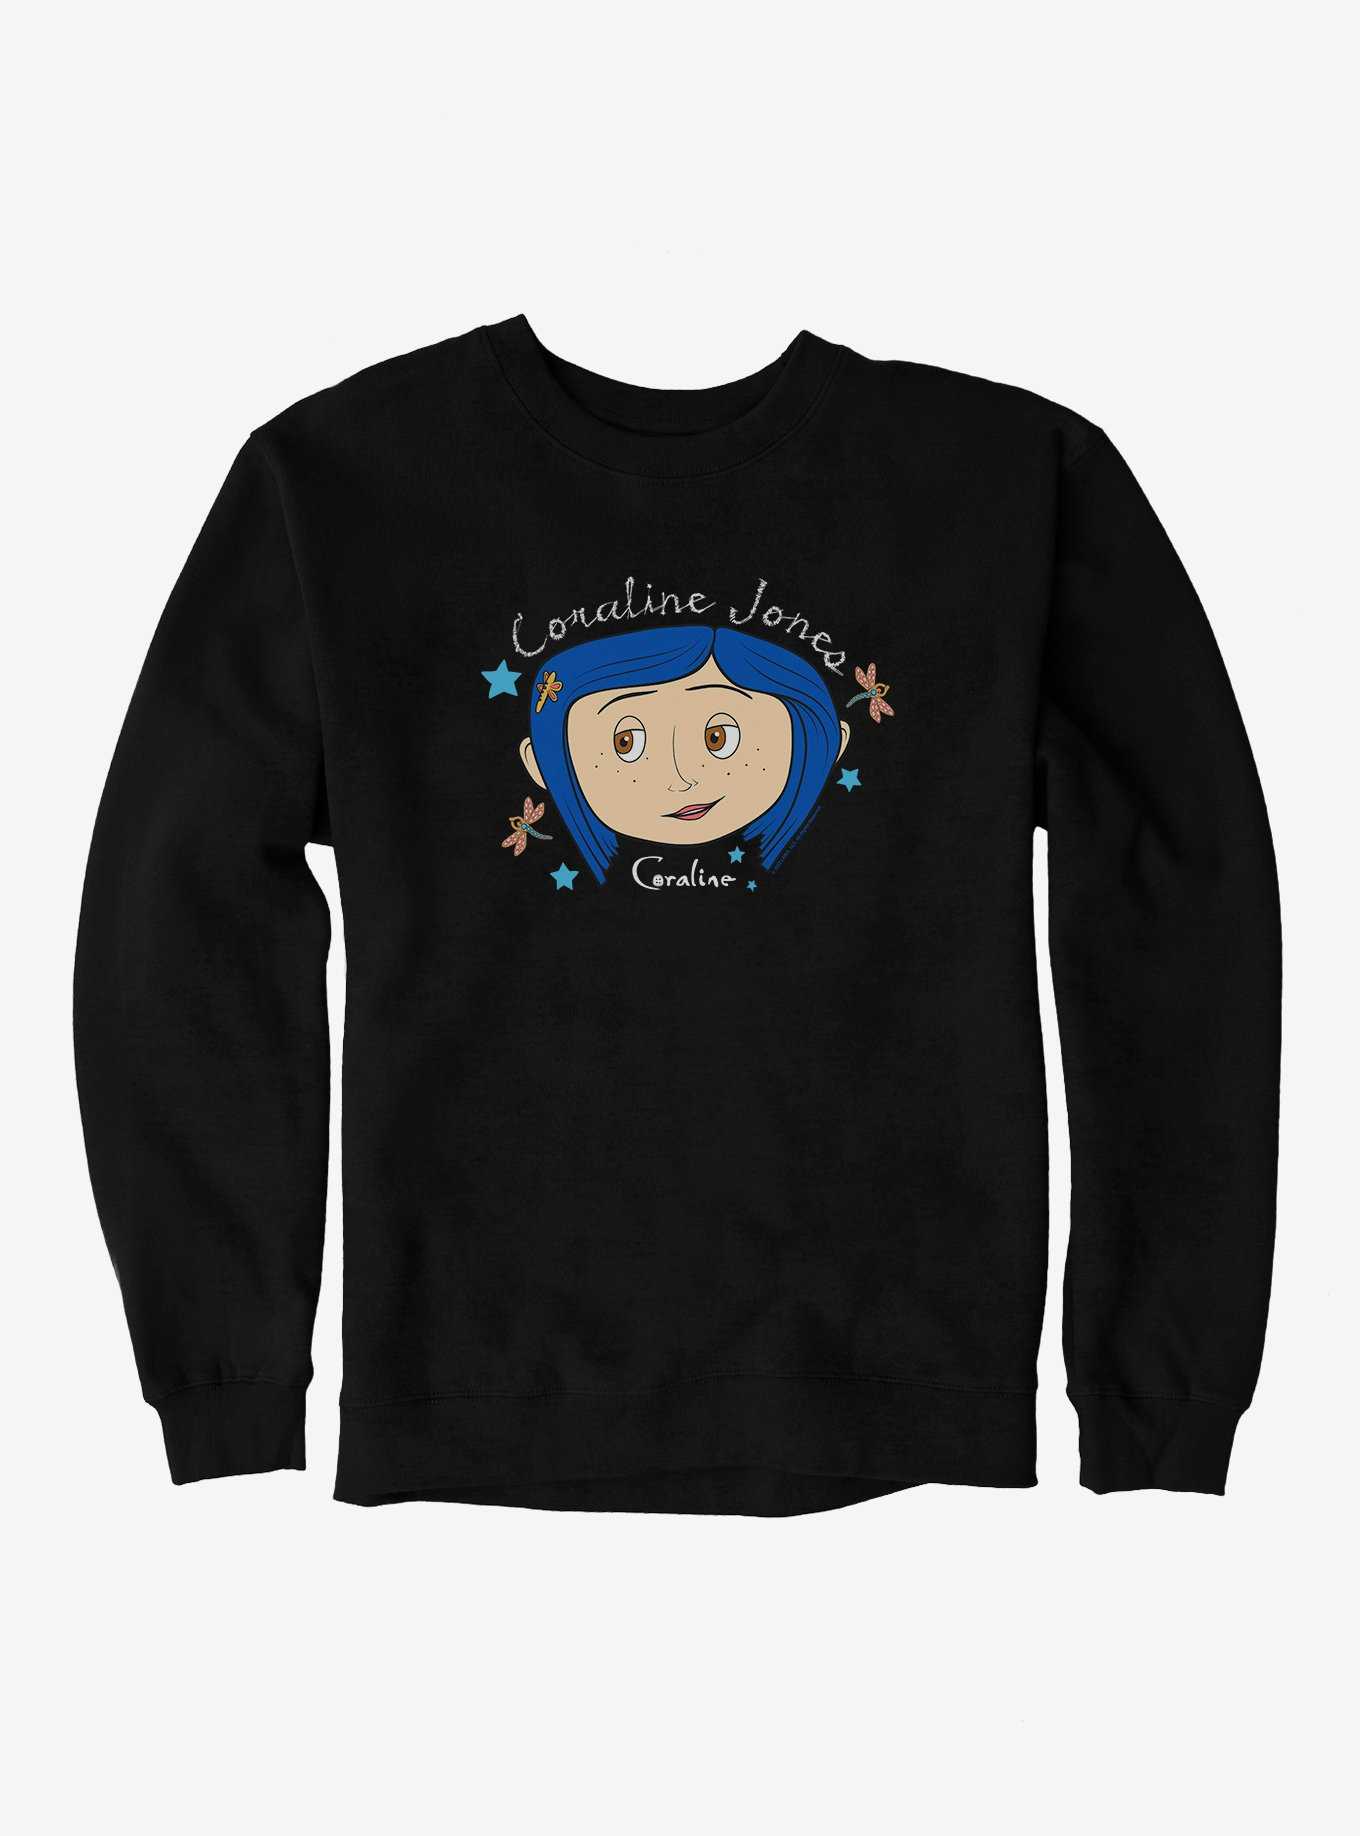 Coraline Coraline Jones Sweatshirt, , hi-res